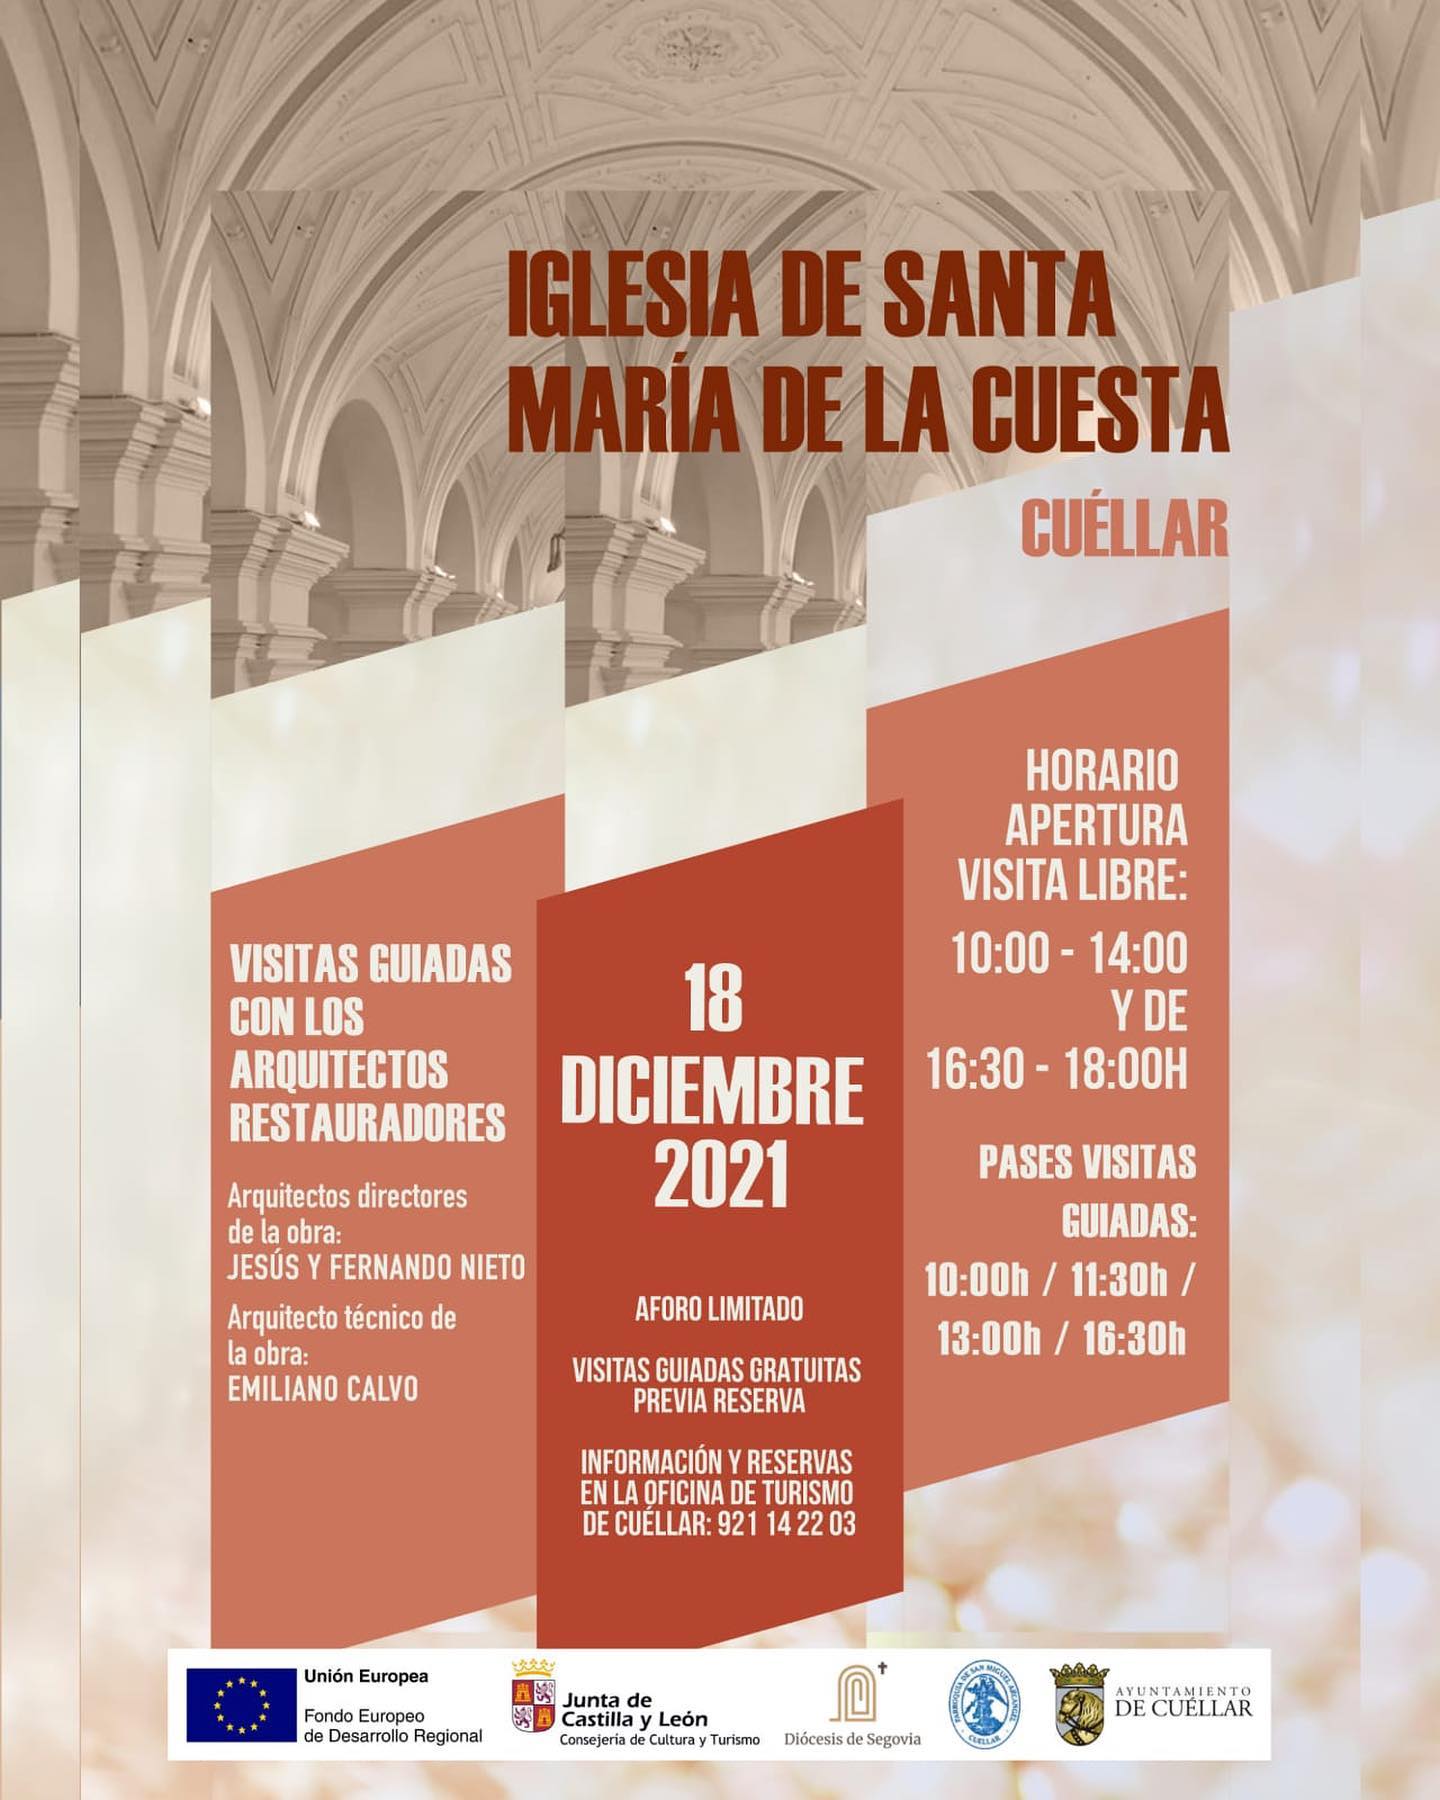 visitas_guiadas_con_arquitectos_restauradores_Iglesia_de_santa_maria_de_la_cuesta.jpg